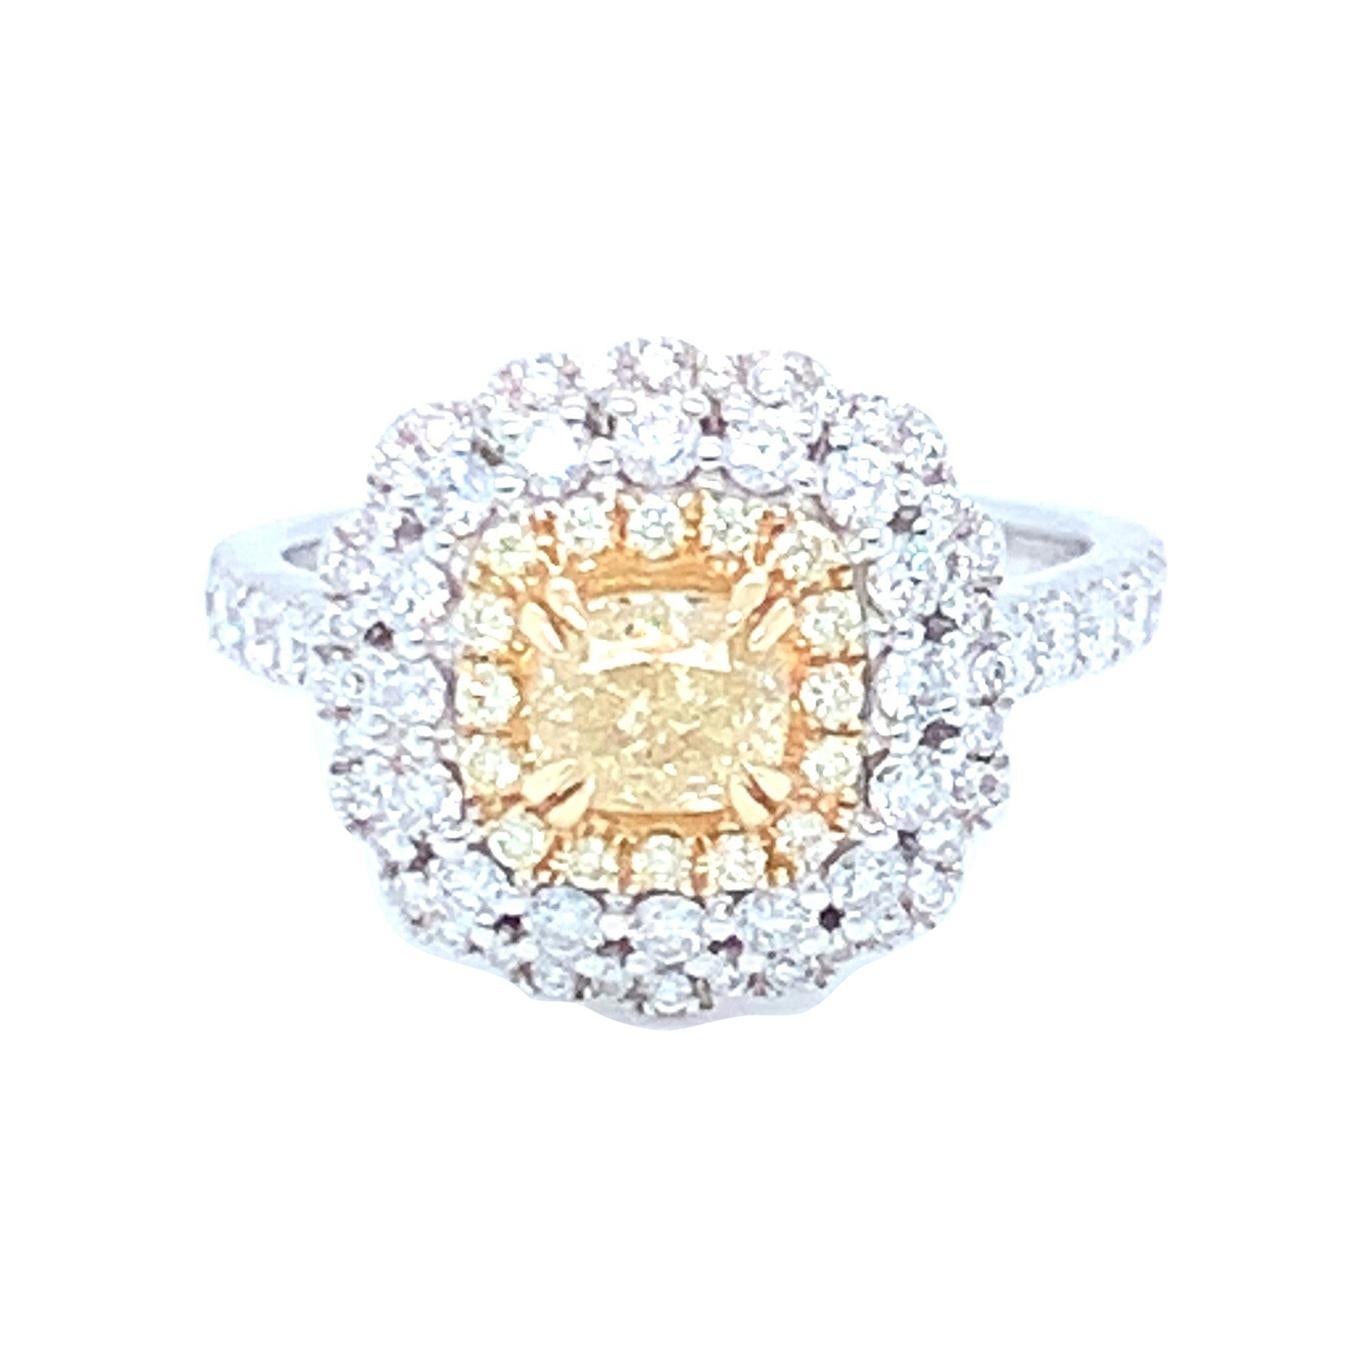 0.69 Carat Cushion Yellow Diamond White Diamond Halo Ring Set in 14 Karat Gold